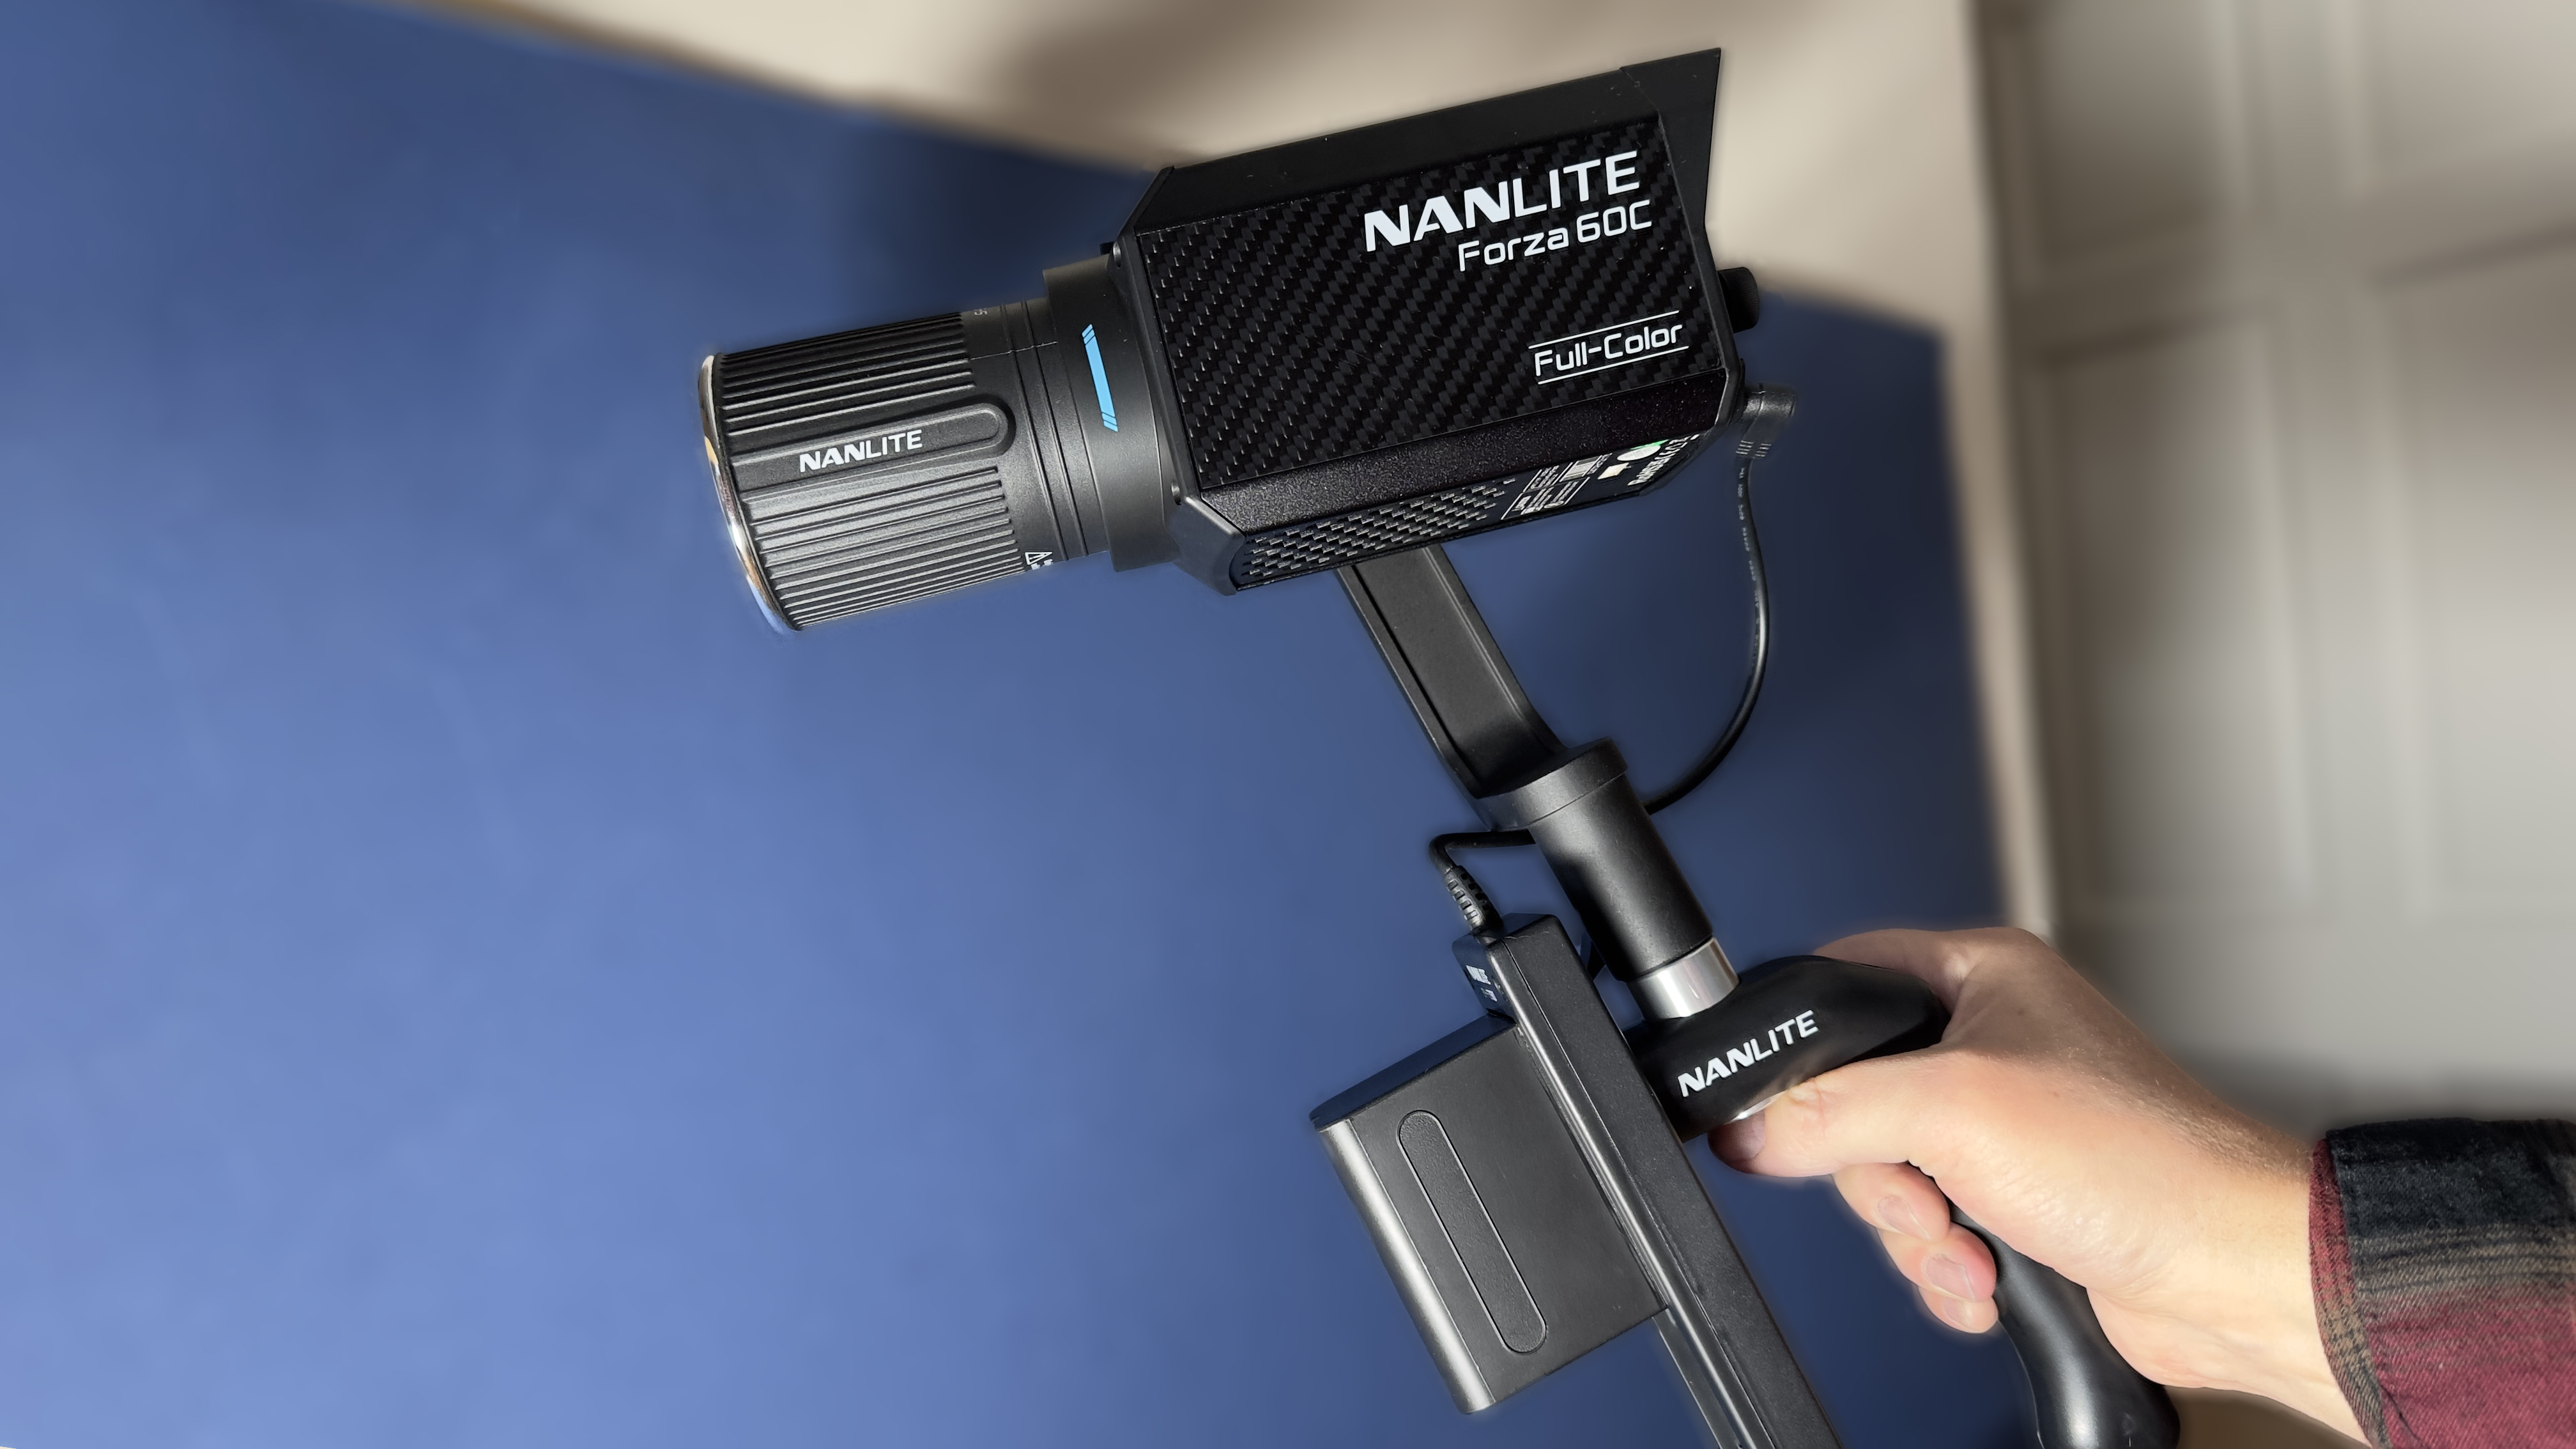 ضوء فيديو Nanlite Forza 60C LED